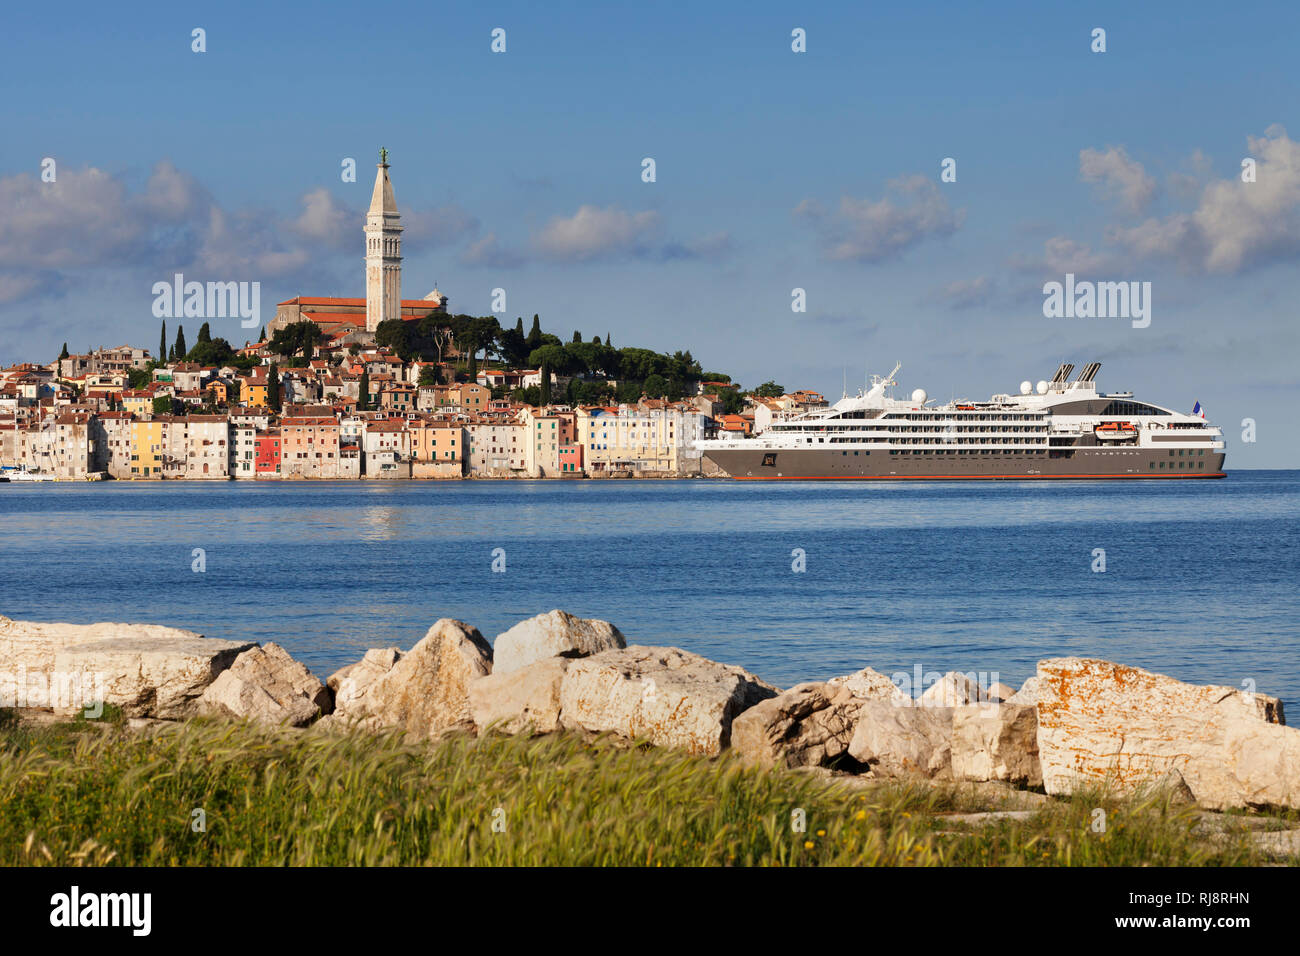 Altstadt mit dem Turm der Pfarrkirche Svete Eufemia und Kreuzfahrtschiff, Rovinj, Istrien, Kroatien Stock Photo